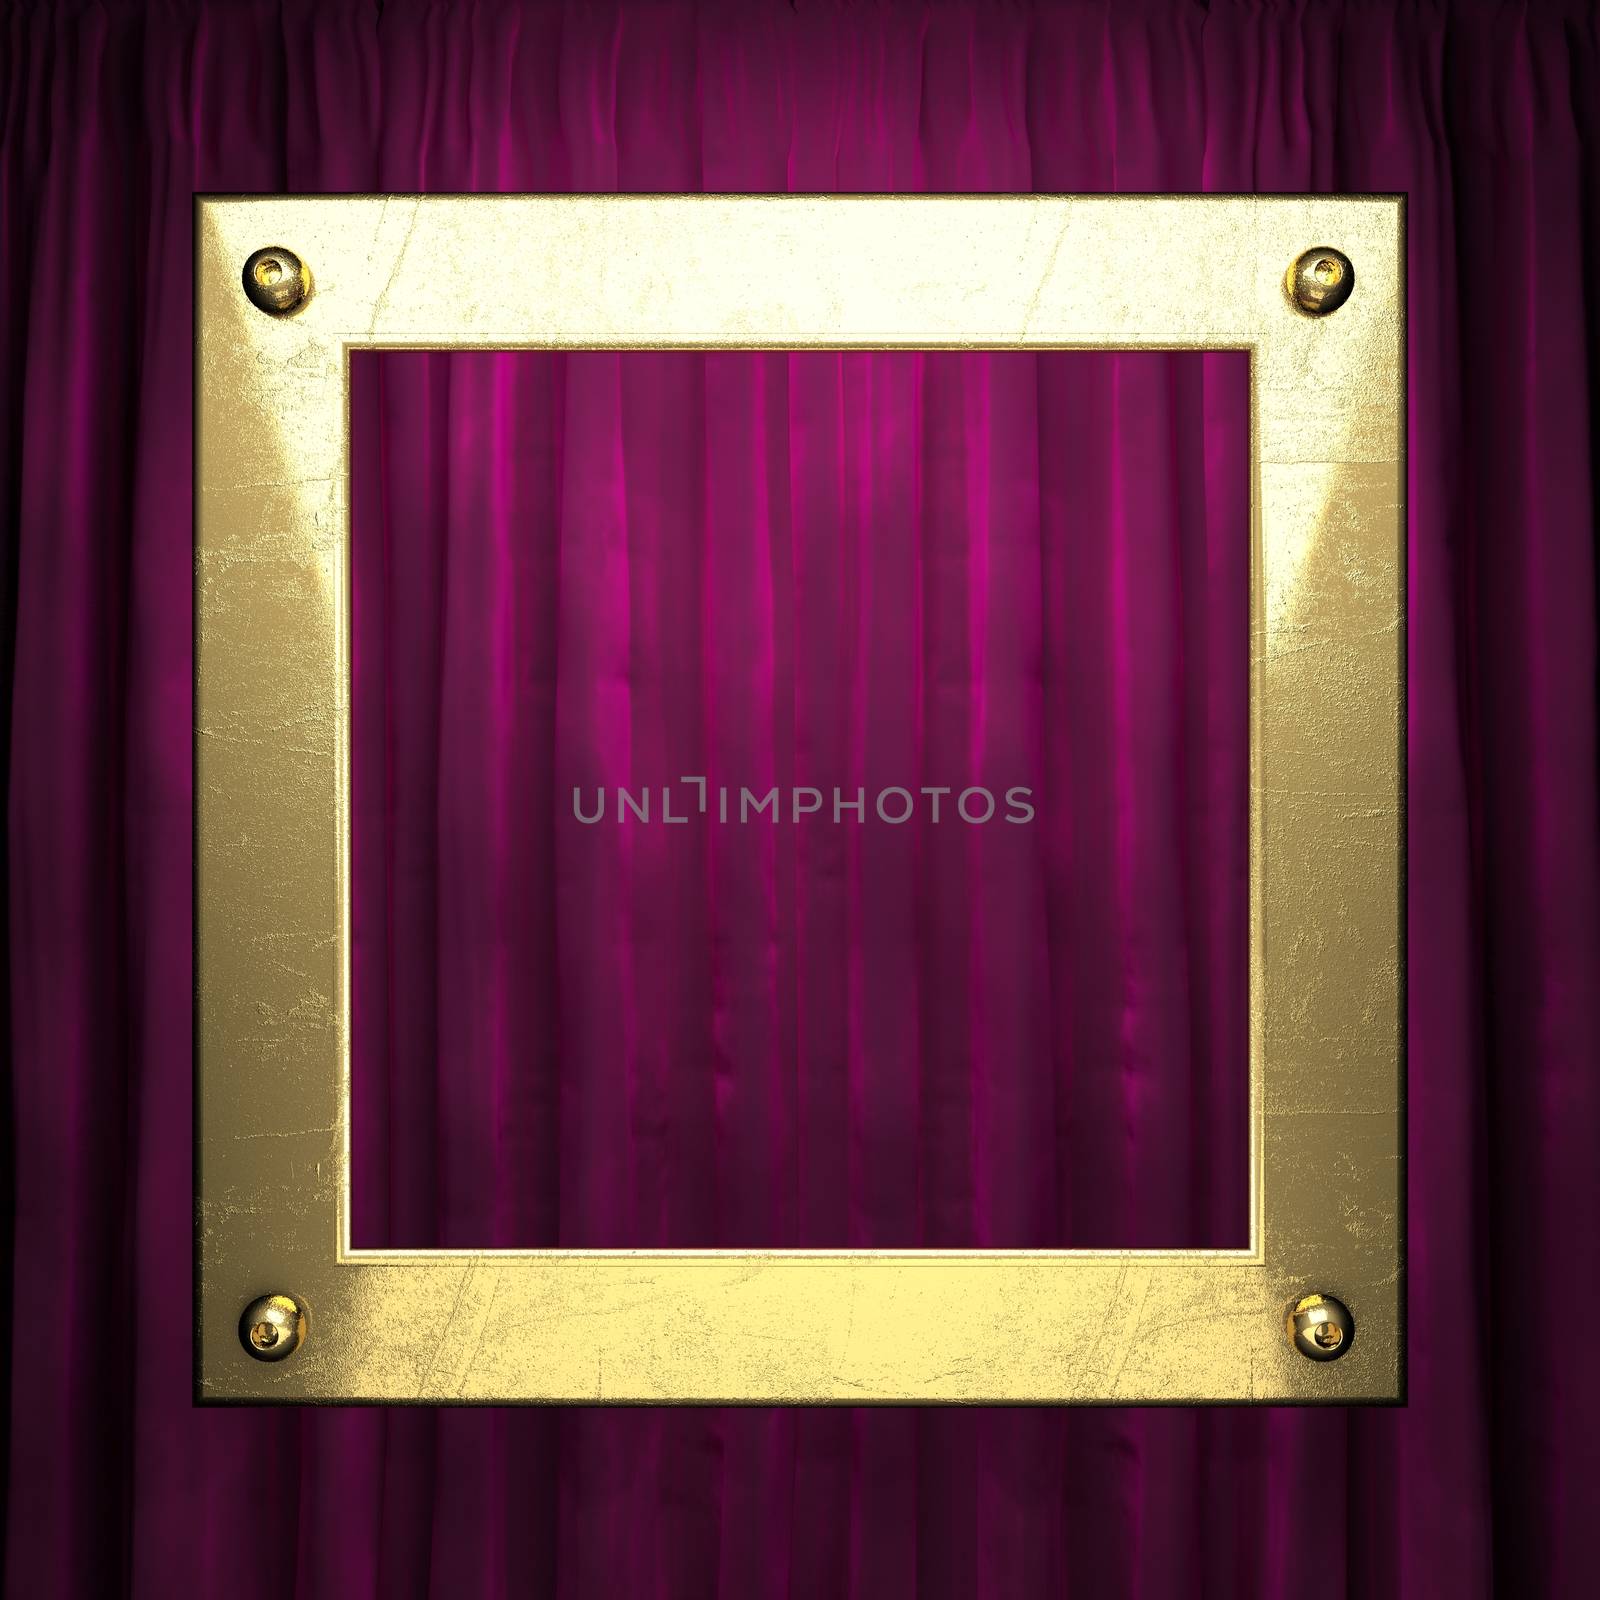 gold on red velvet curtain background